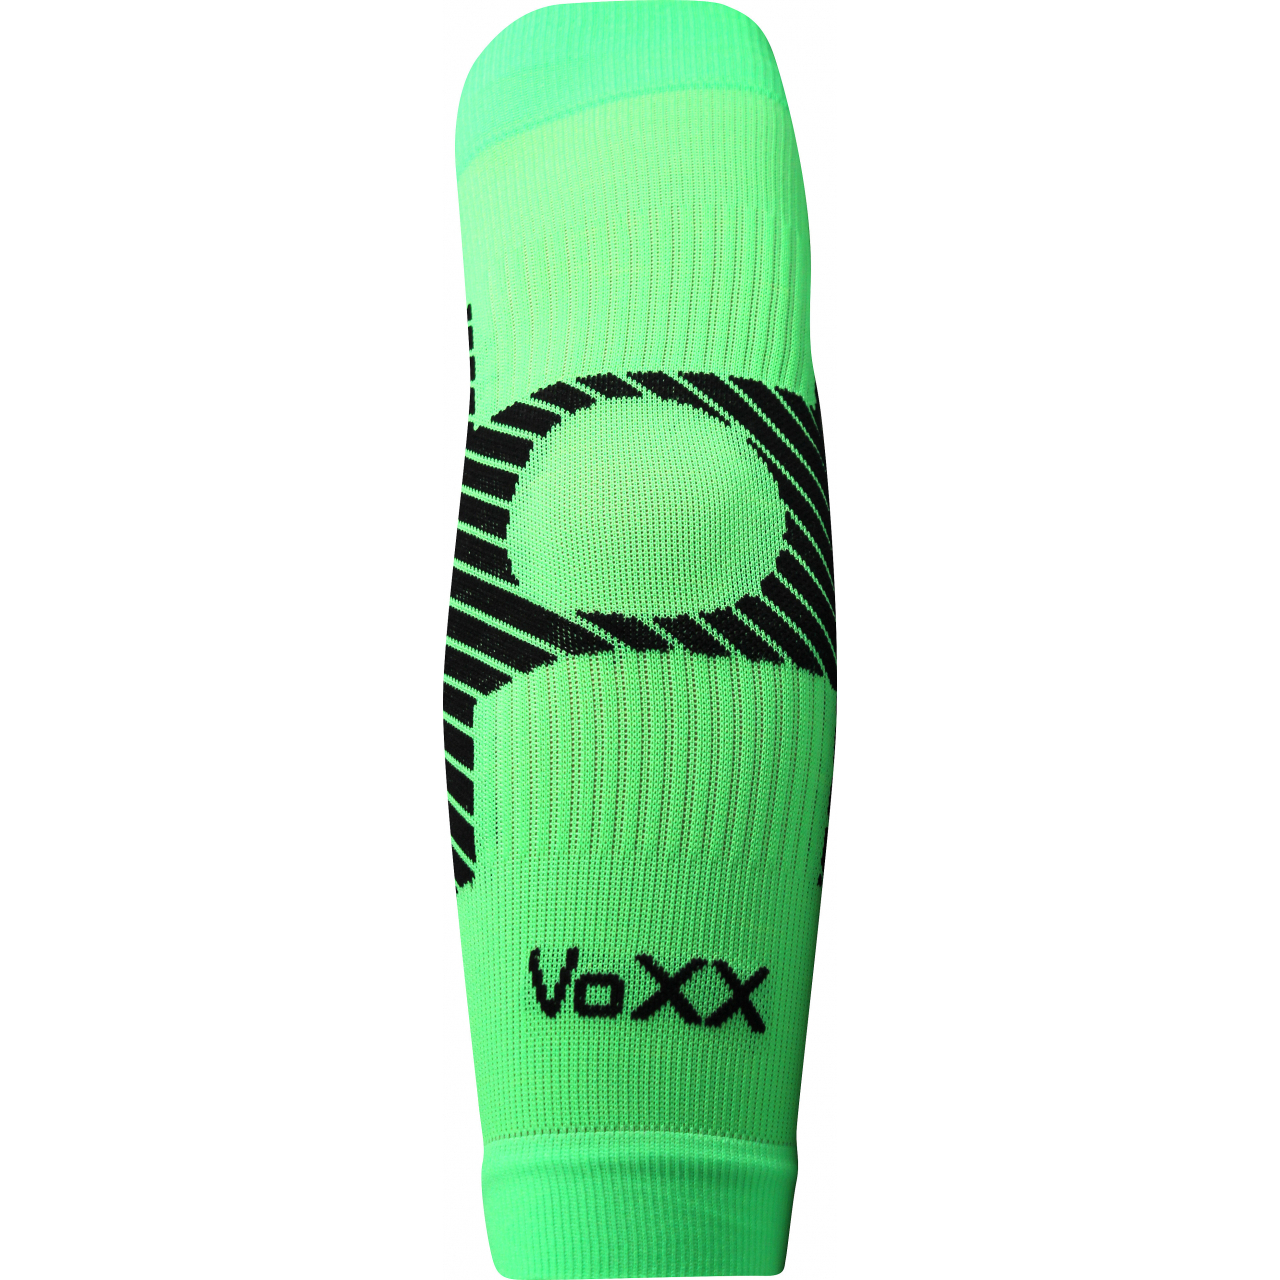 Návlek kompresní Voxx Protect loket - zelený svítící, S/M